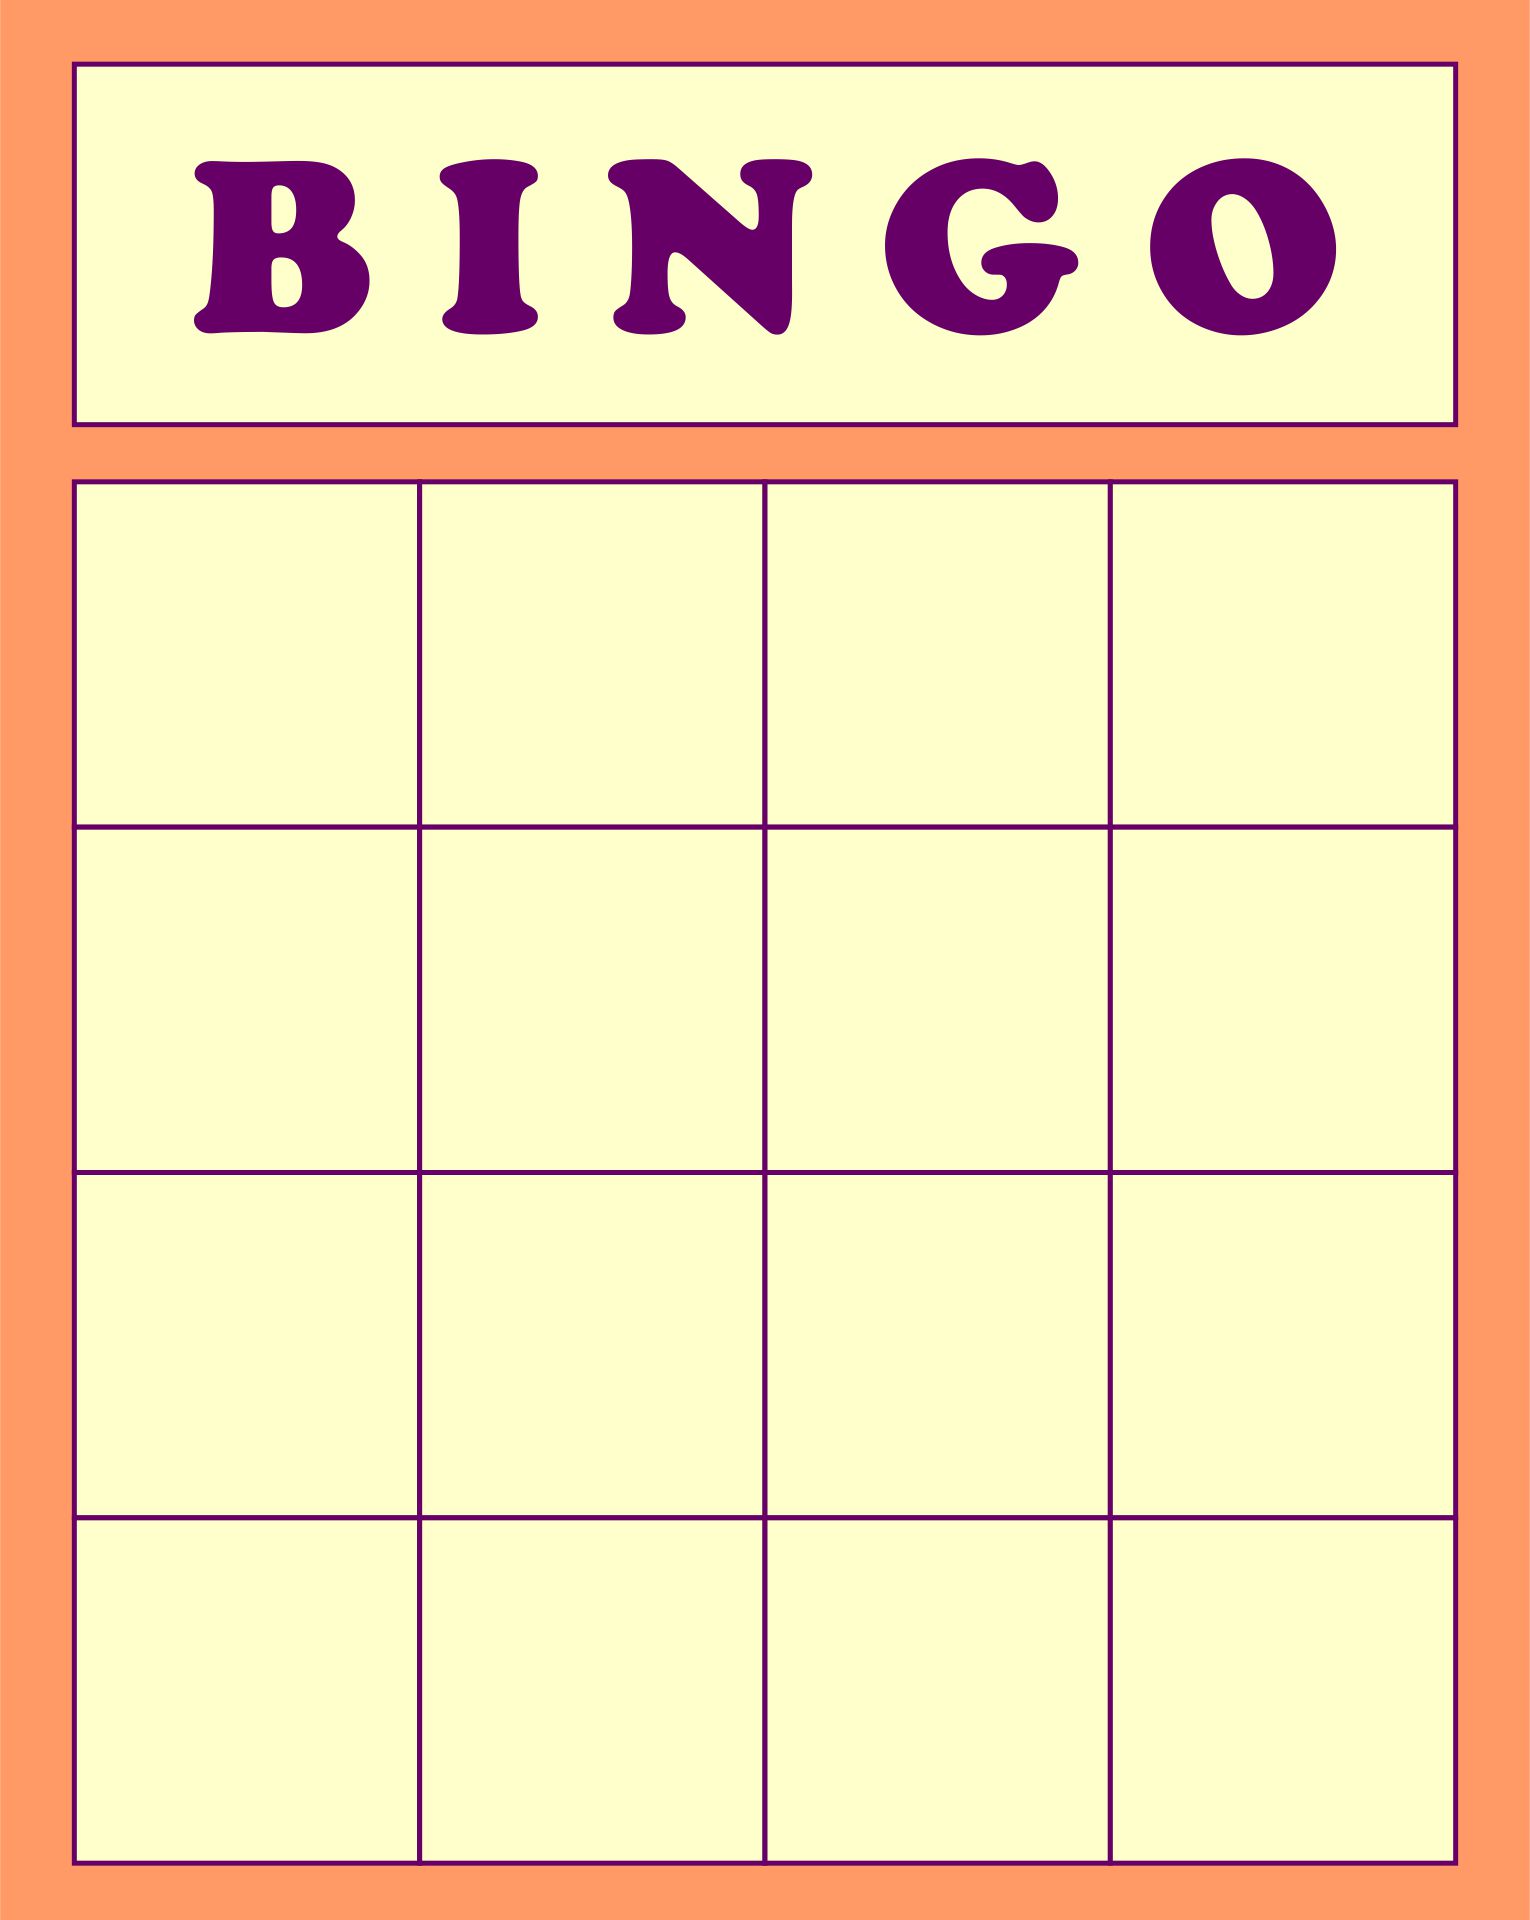 Free Printable Bingo Cards Blank Printable World Holiday